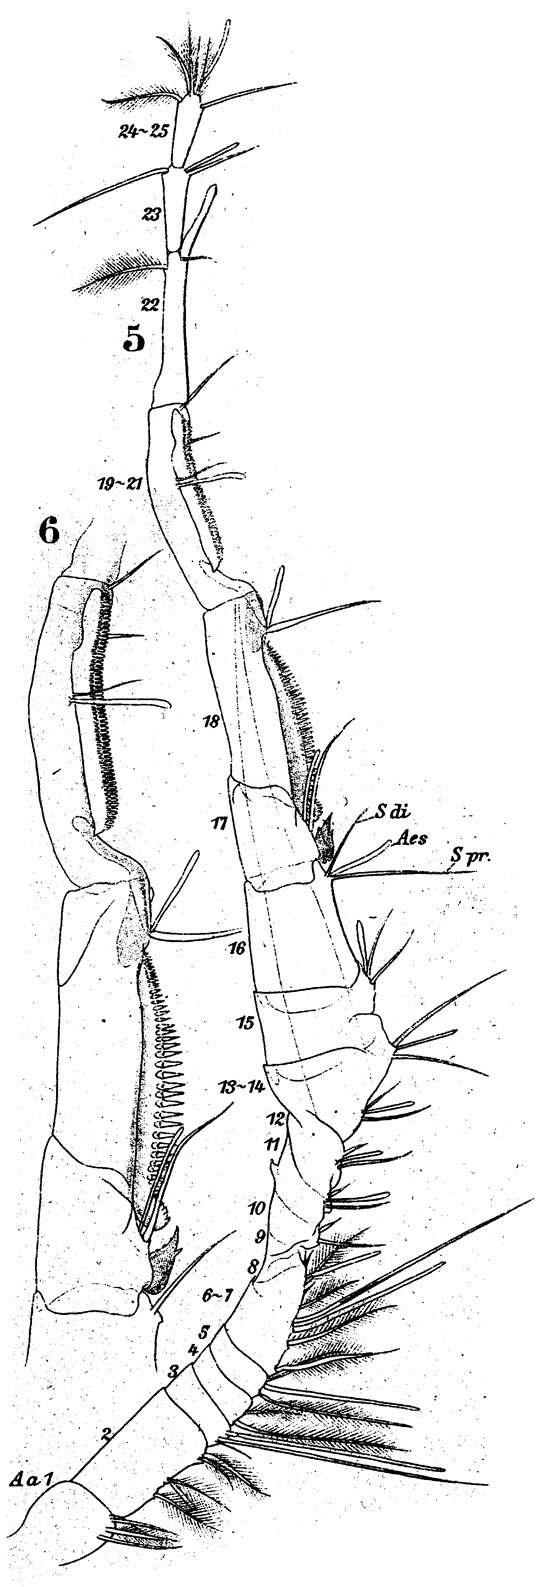 Espèce Labidocera wollastoni - Planche 12 de figures morphologiques